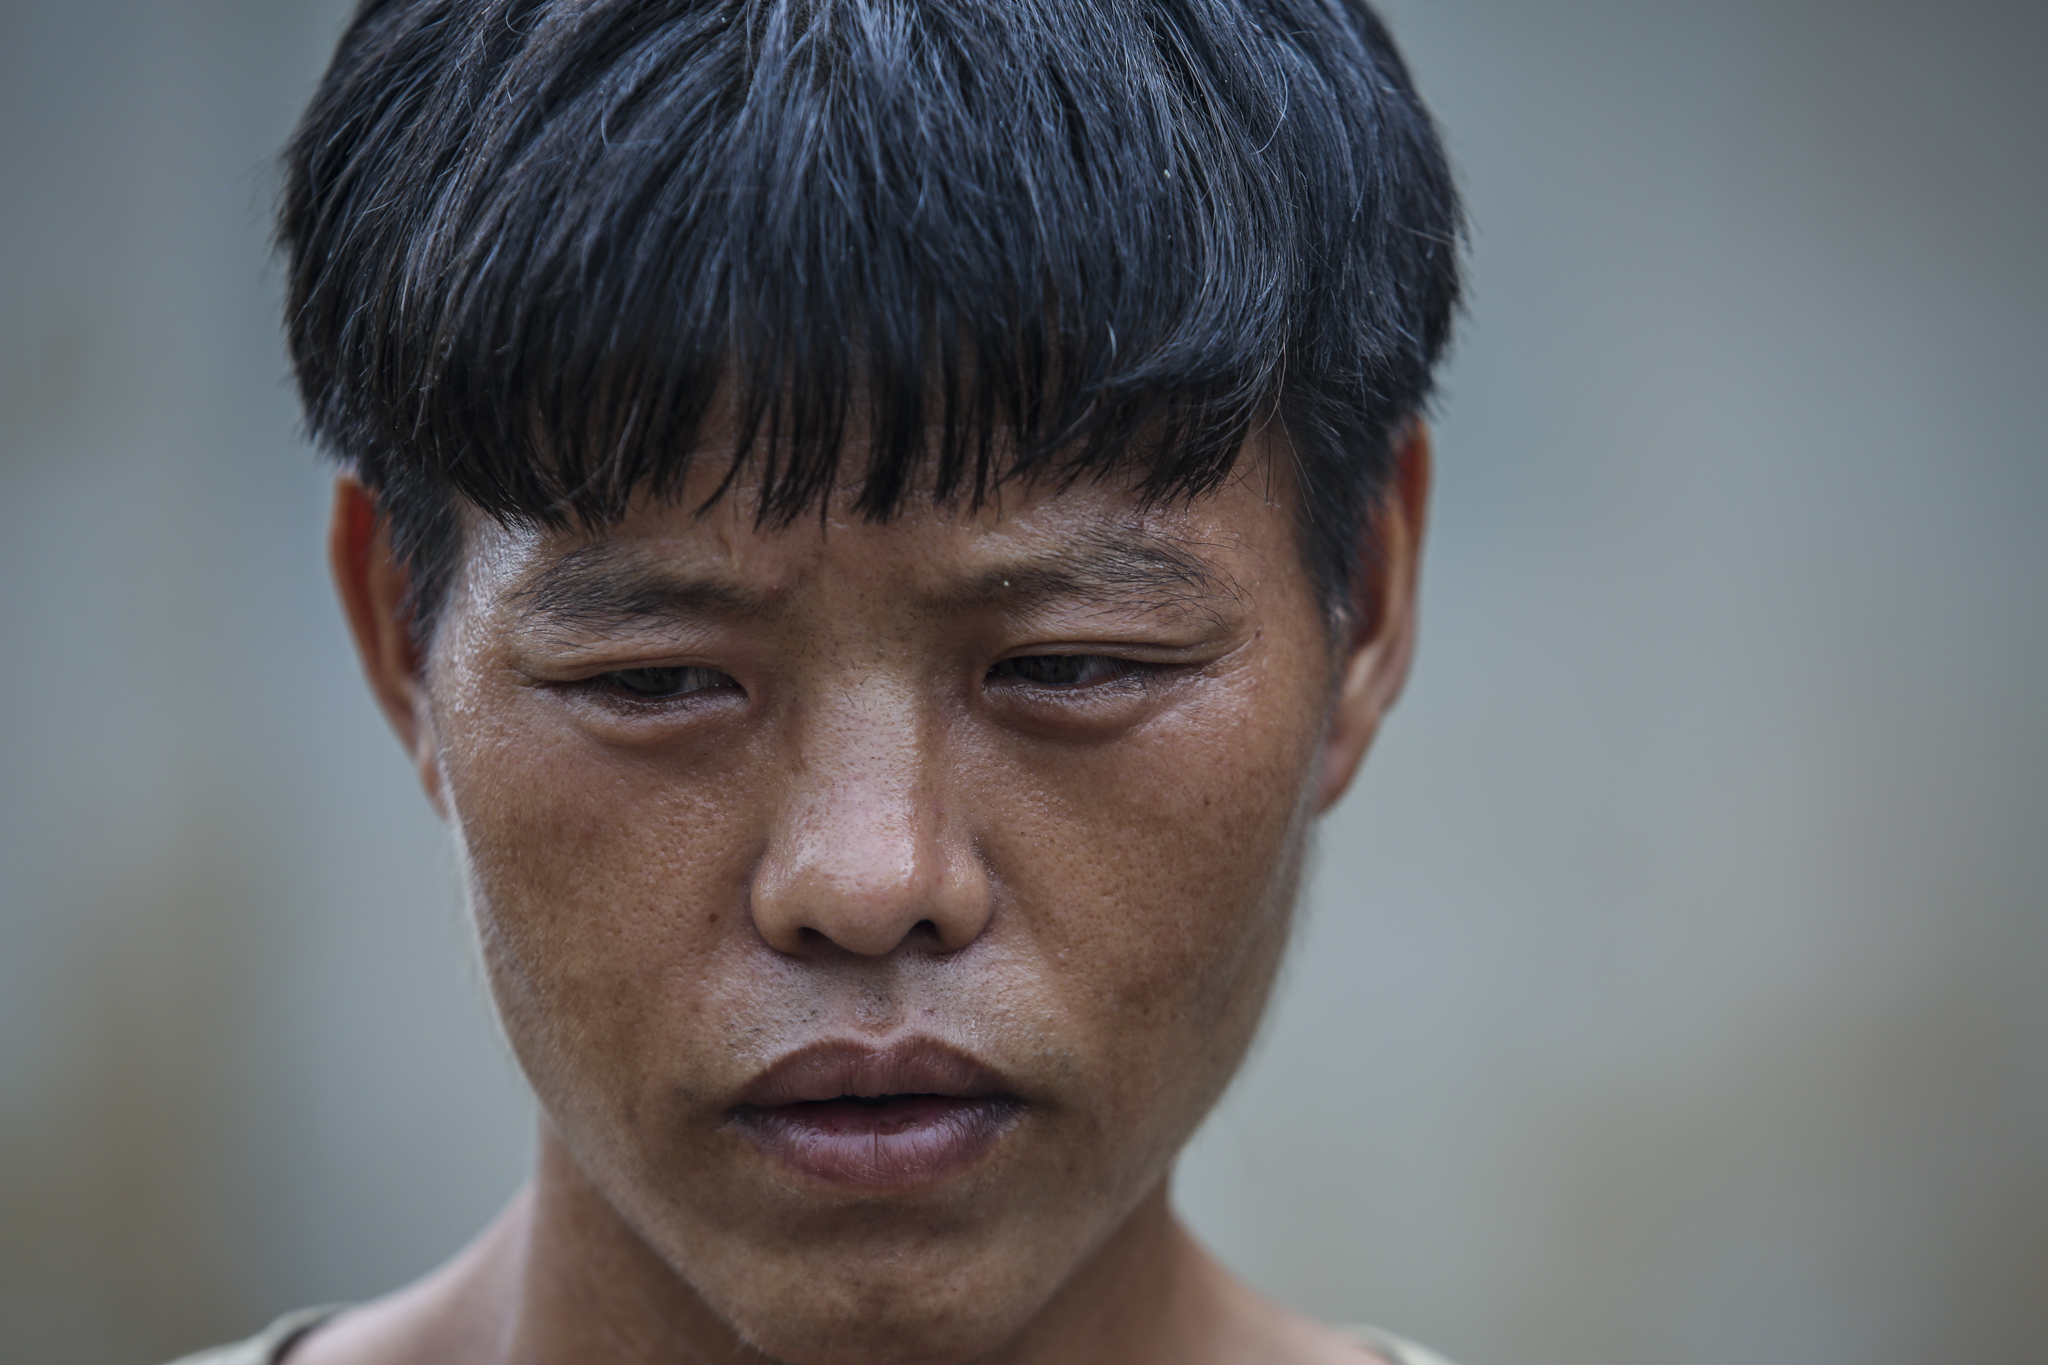 Lò Chính Cồ, một người dân thôn Tùng Nùn vẫn chưa hết bàng hoàng vì đã mất đi người vợ và đứa con gái còn nhỏ dại. (Ảnh: Minh Sơn/Vietnam+)